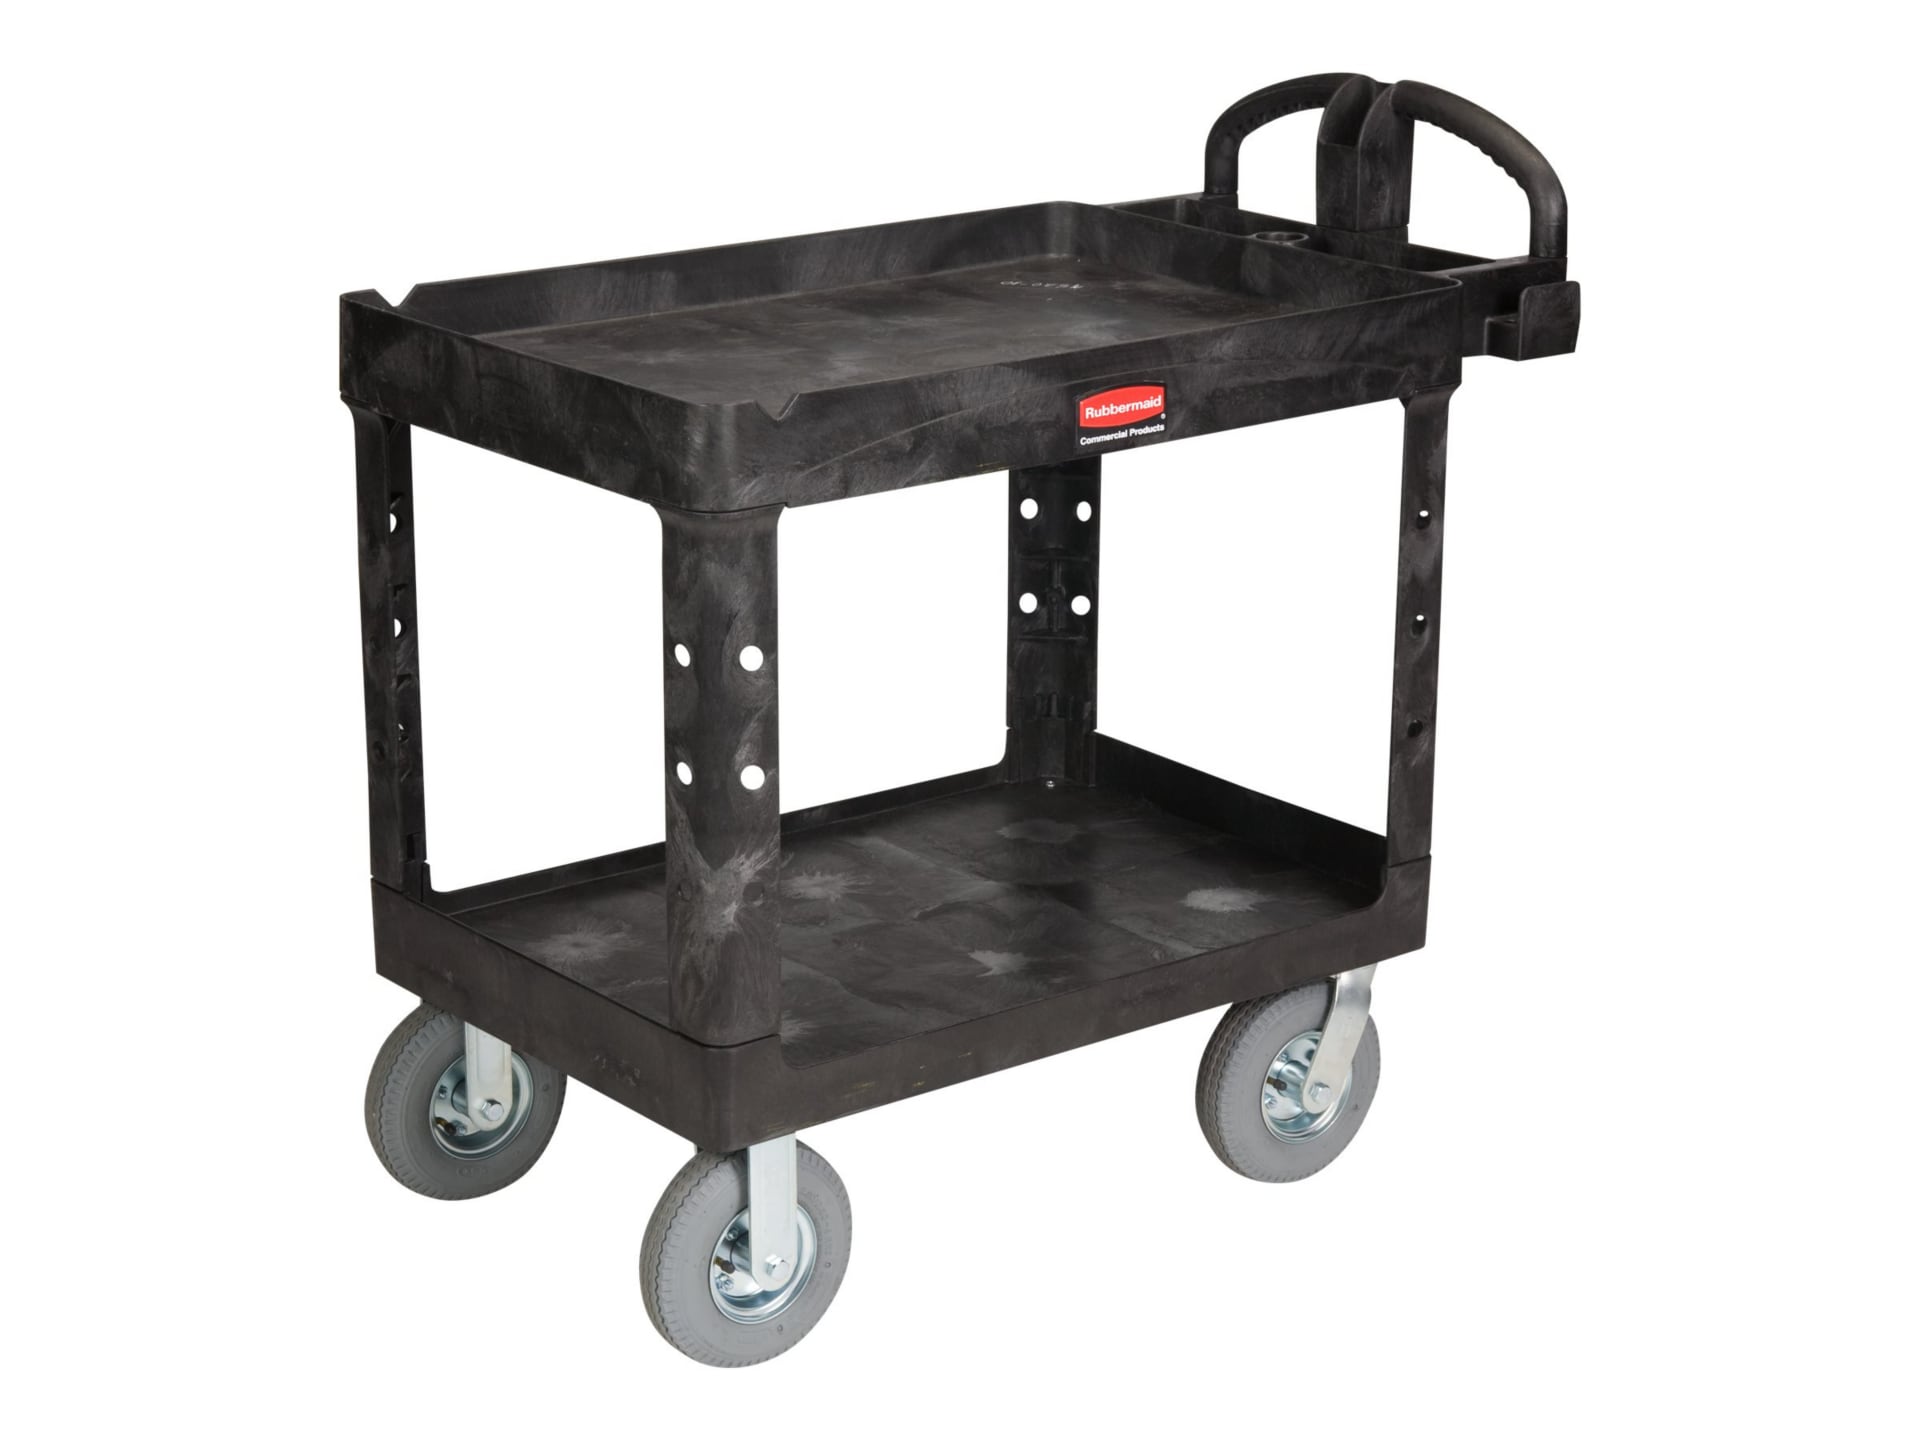 Rubbermaid Heavy-Duty Utility Cart - trolley - 2 shelves - black